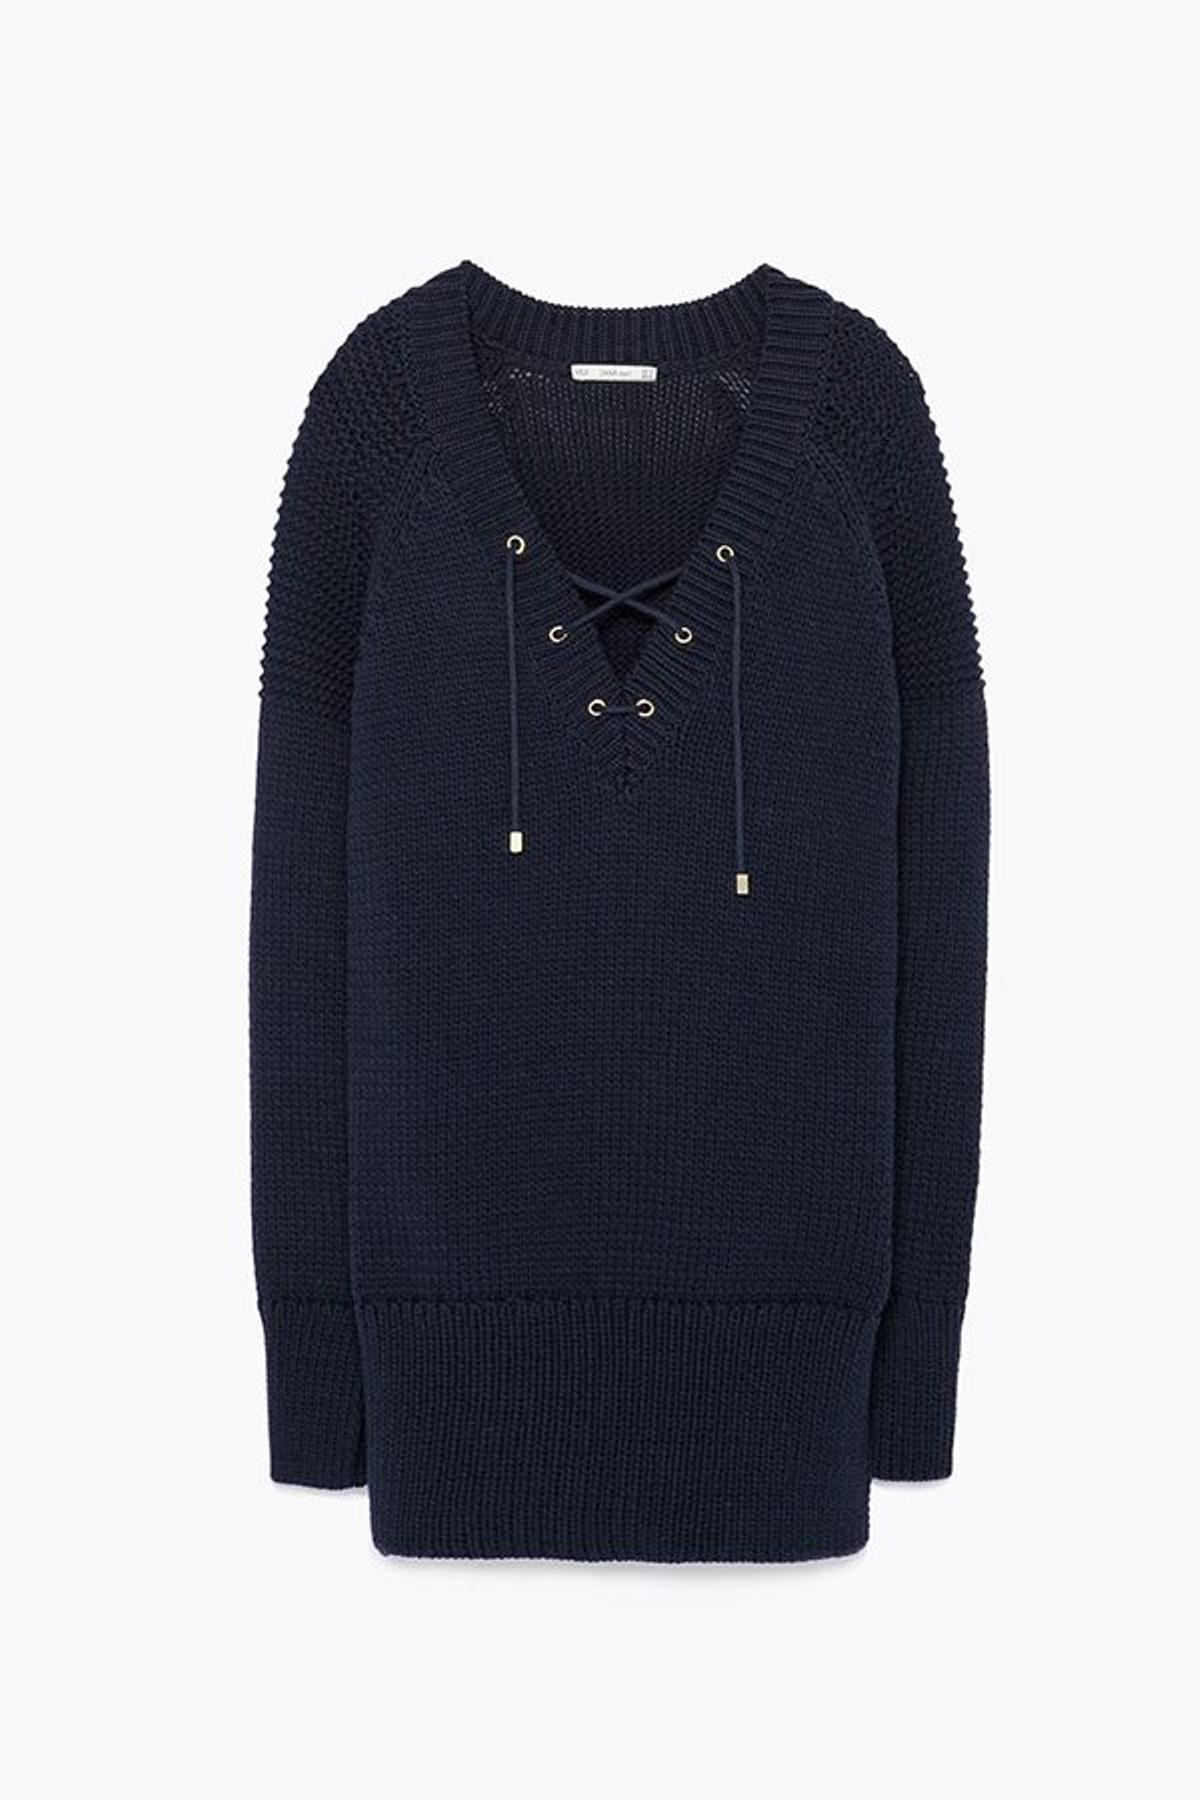 Jersey escote pico cordón cuello de Zara (9,99€)